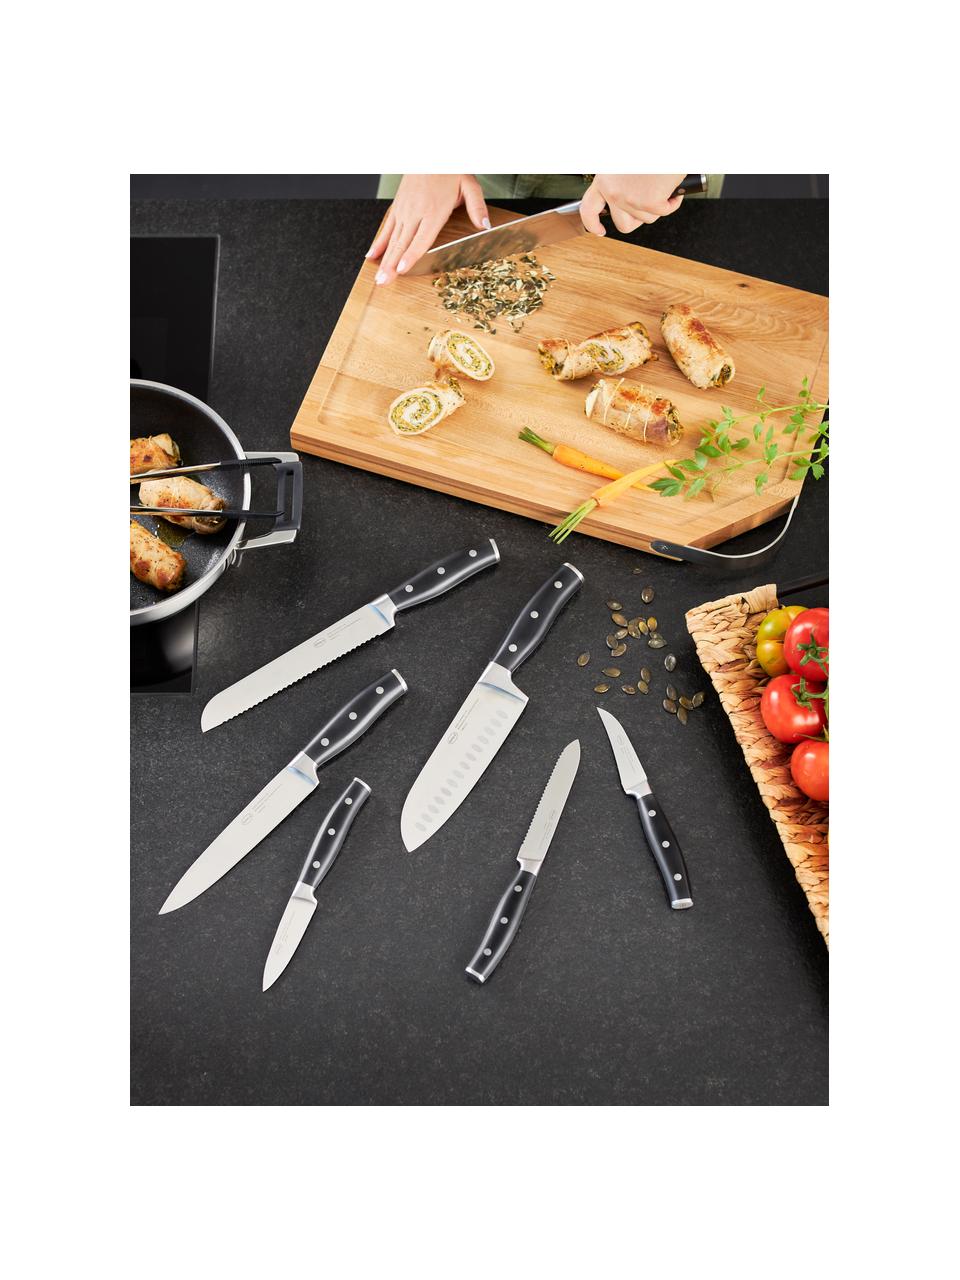 Stojan s 5 nožmi a nožnicami Cuisine, Svetlé drevo, čierna, Súprava v rôznych veľkostiach